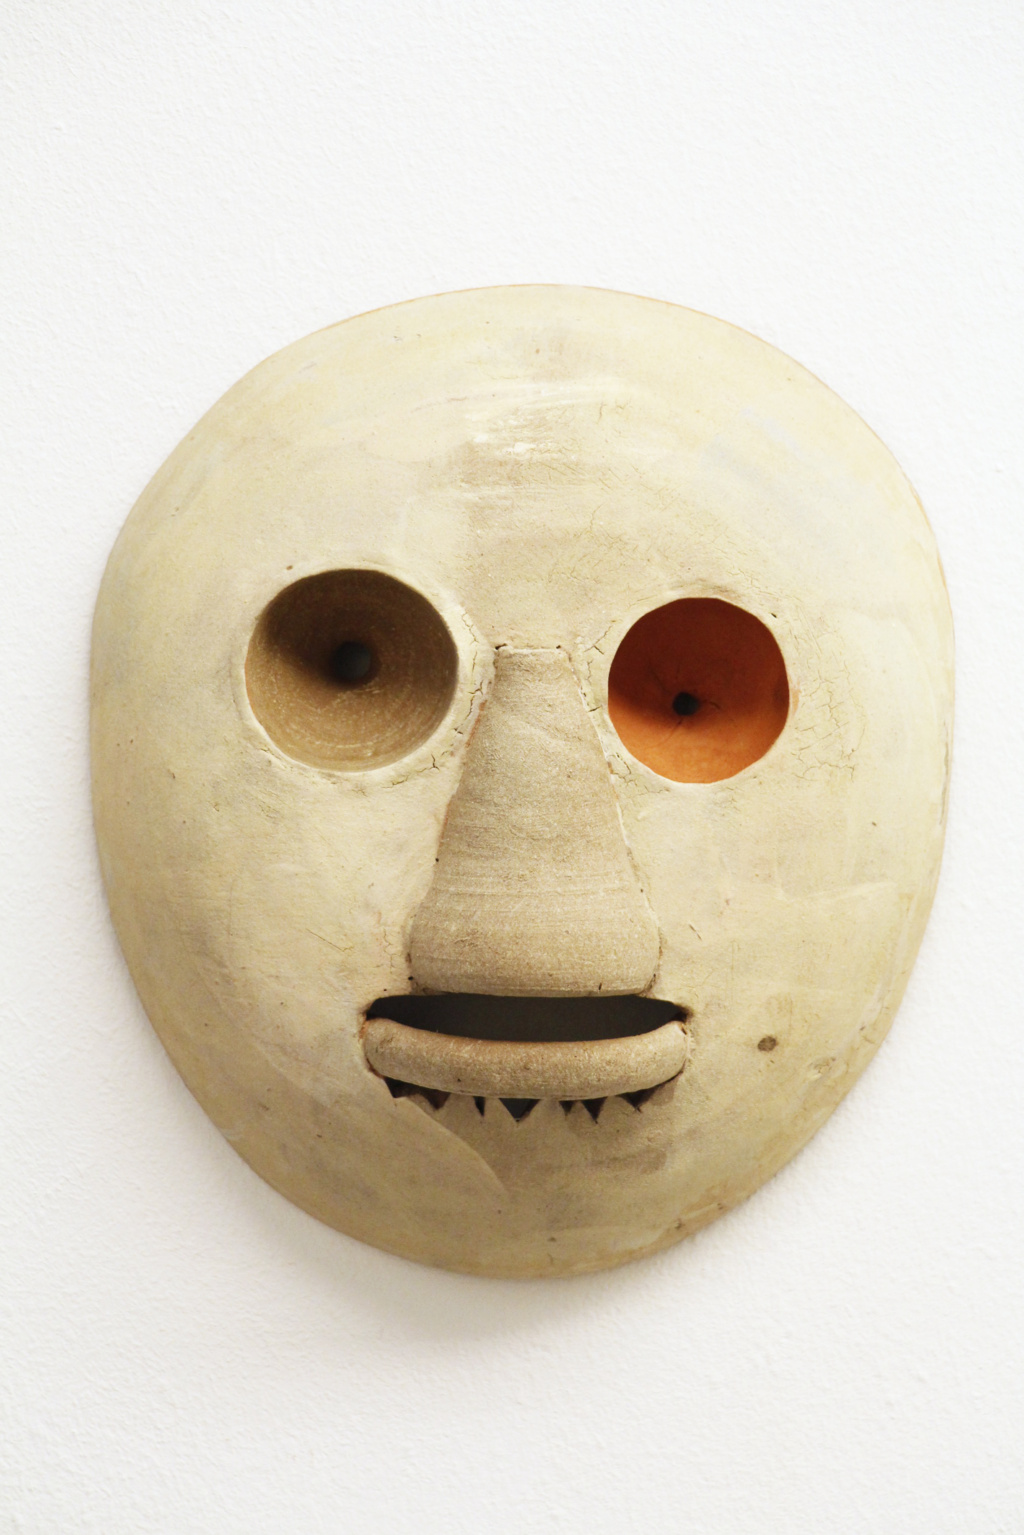 Gabi Hamm, Untitled #35, 2015
Glazed clay
Height 10 cm